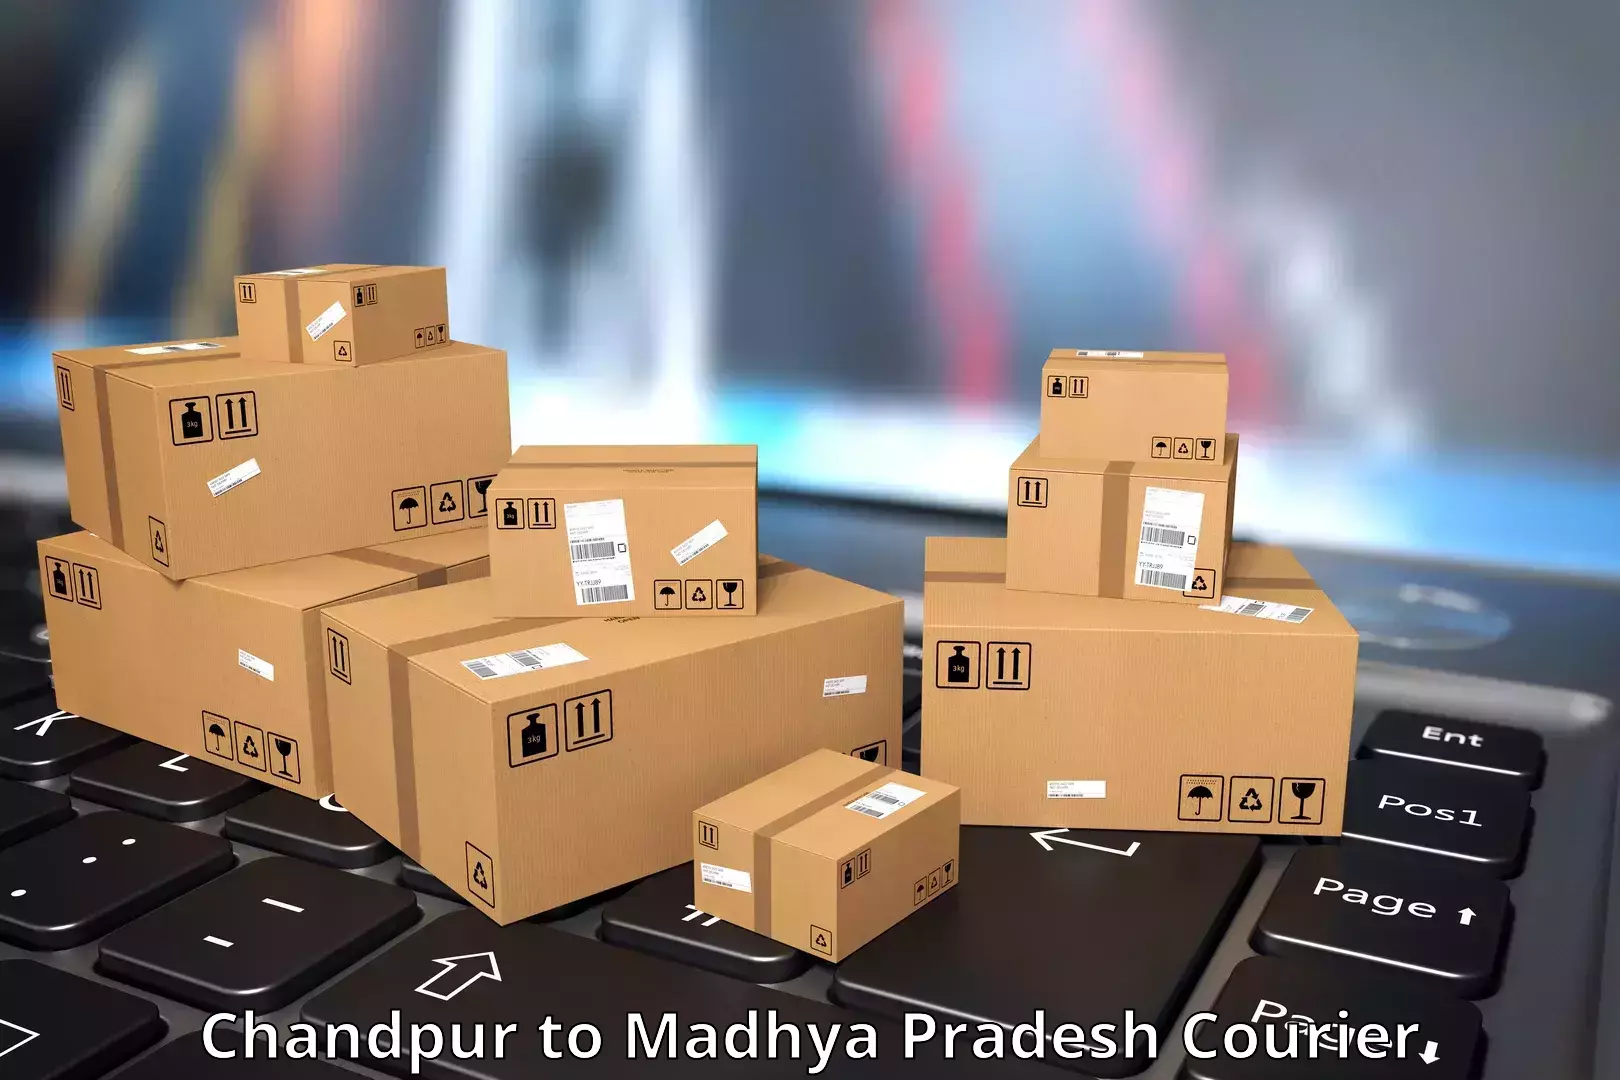 Package tracking Chandpur to Guna